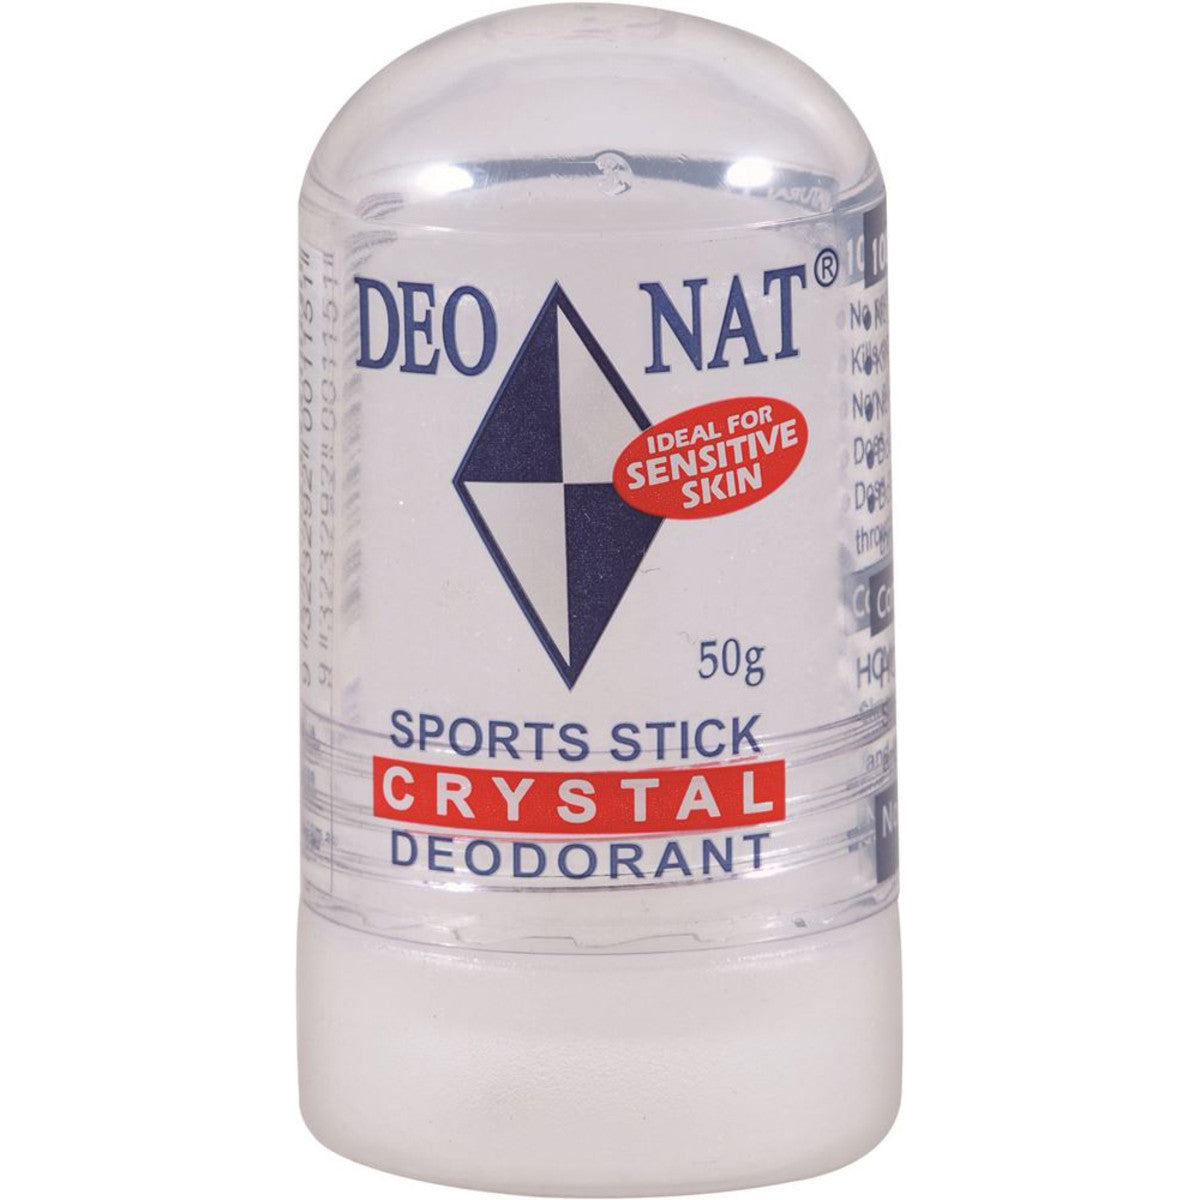 Deonat - Crystal Deodorant Sports Stick